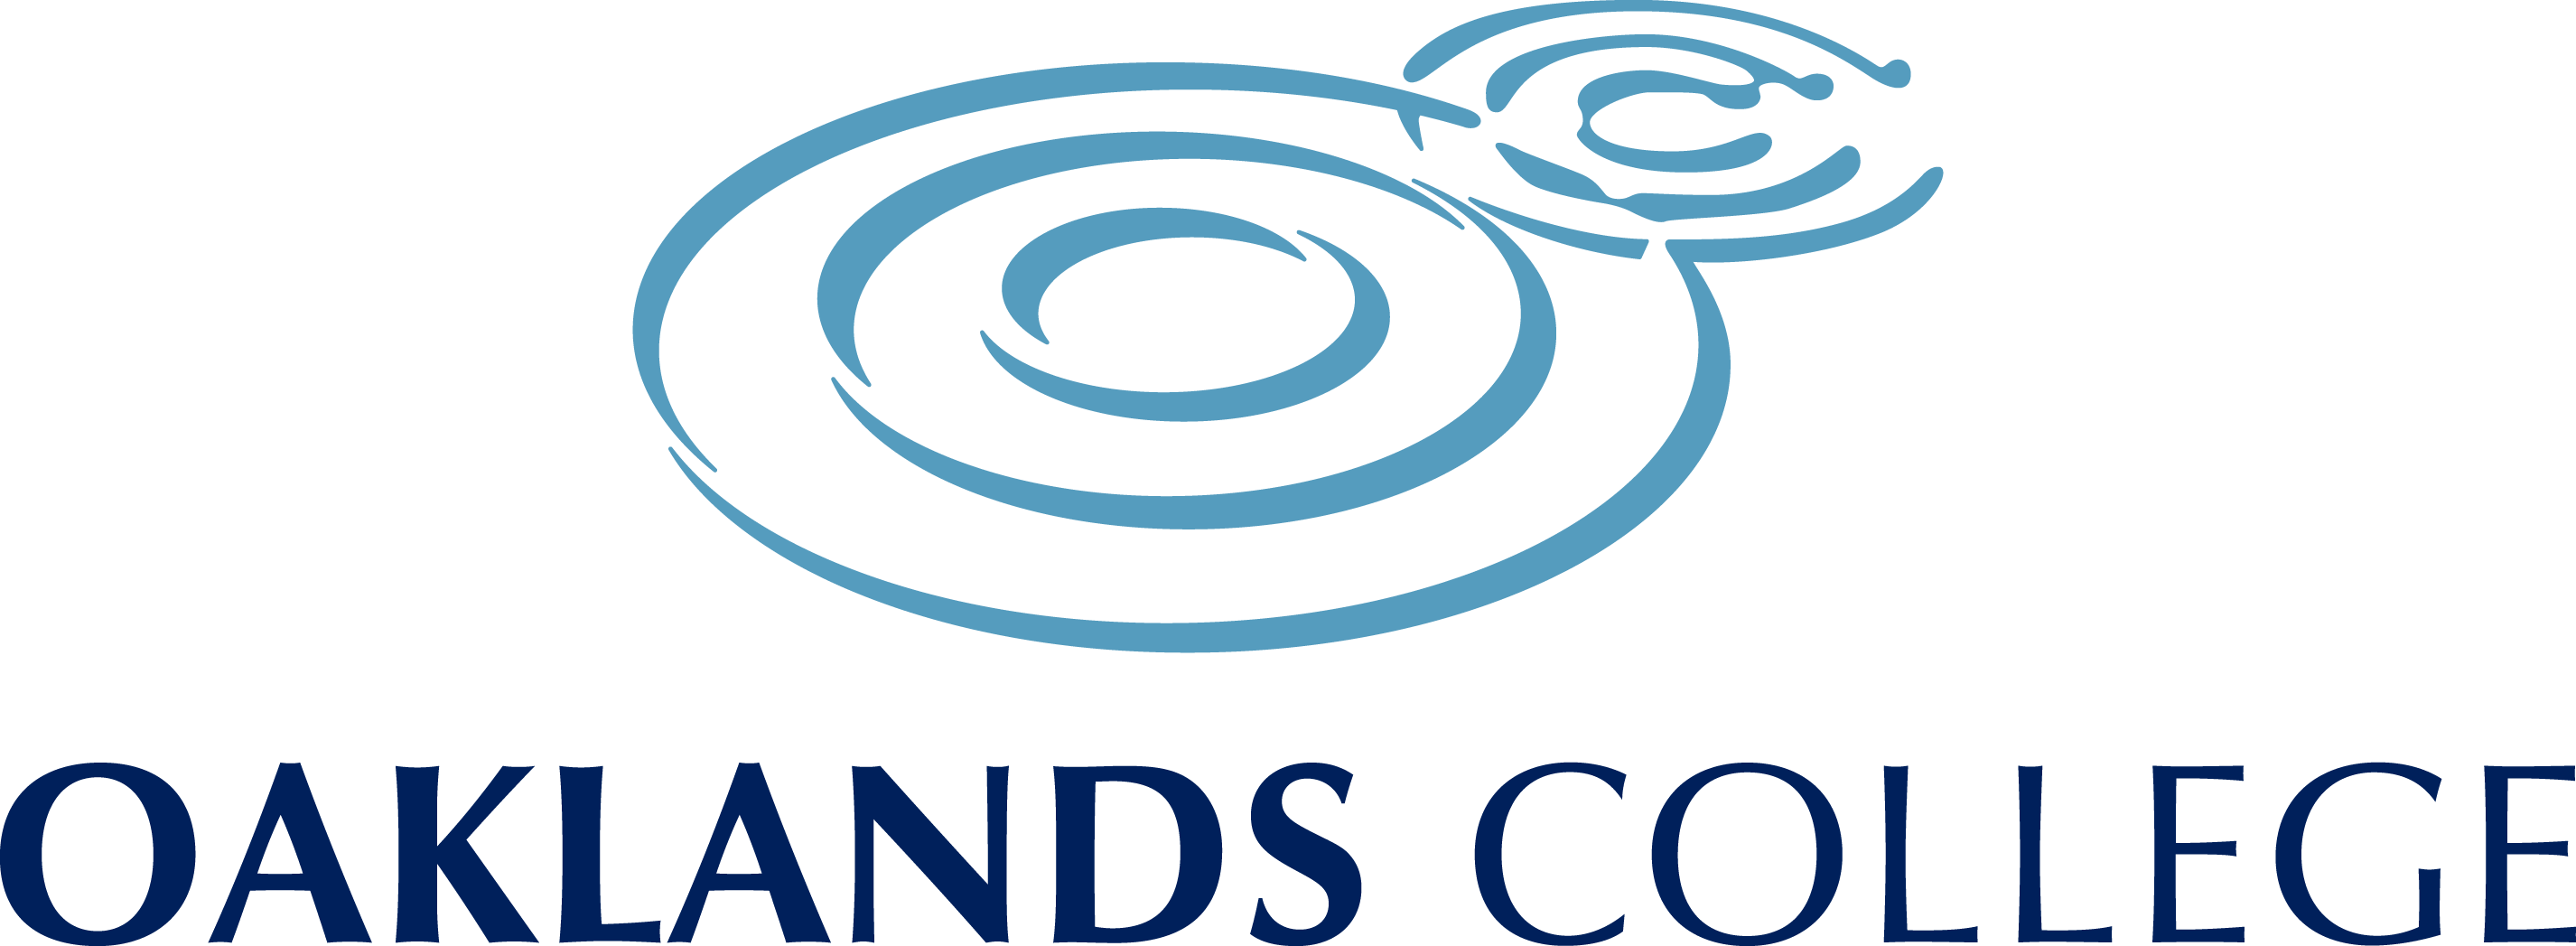 high-quality-oaklands-logo copy